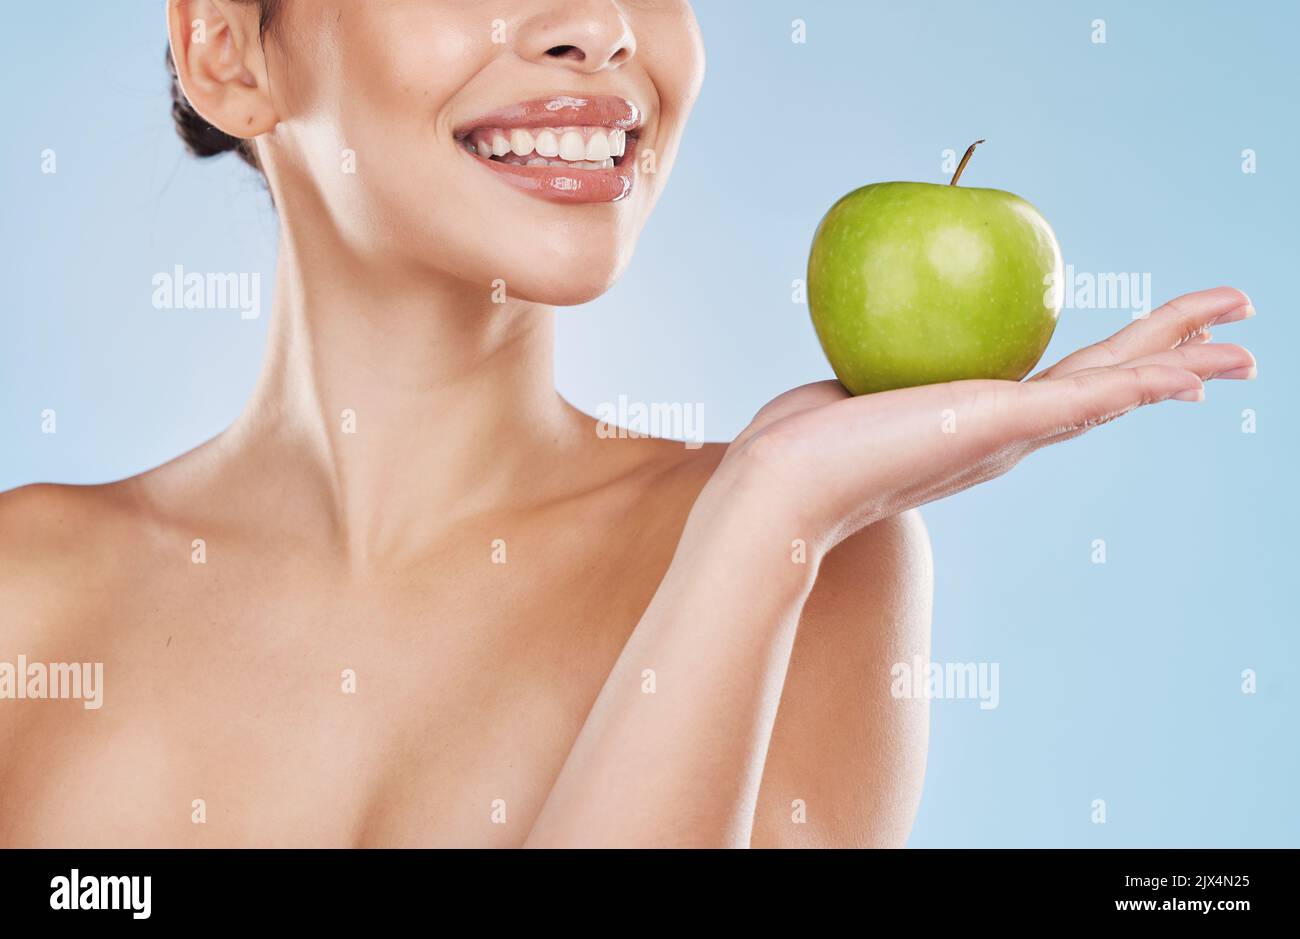 Gesundheit, Schönheit und Frau mit einem Apfel und einem Wellness, gesunde und organische Lebensstil im Studio. Mädchen mit klarer Haut und frischer Hautpflege Routine Stockfoto